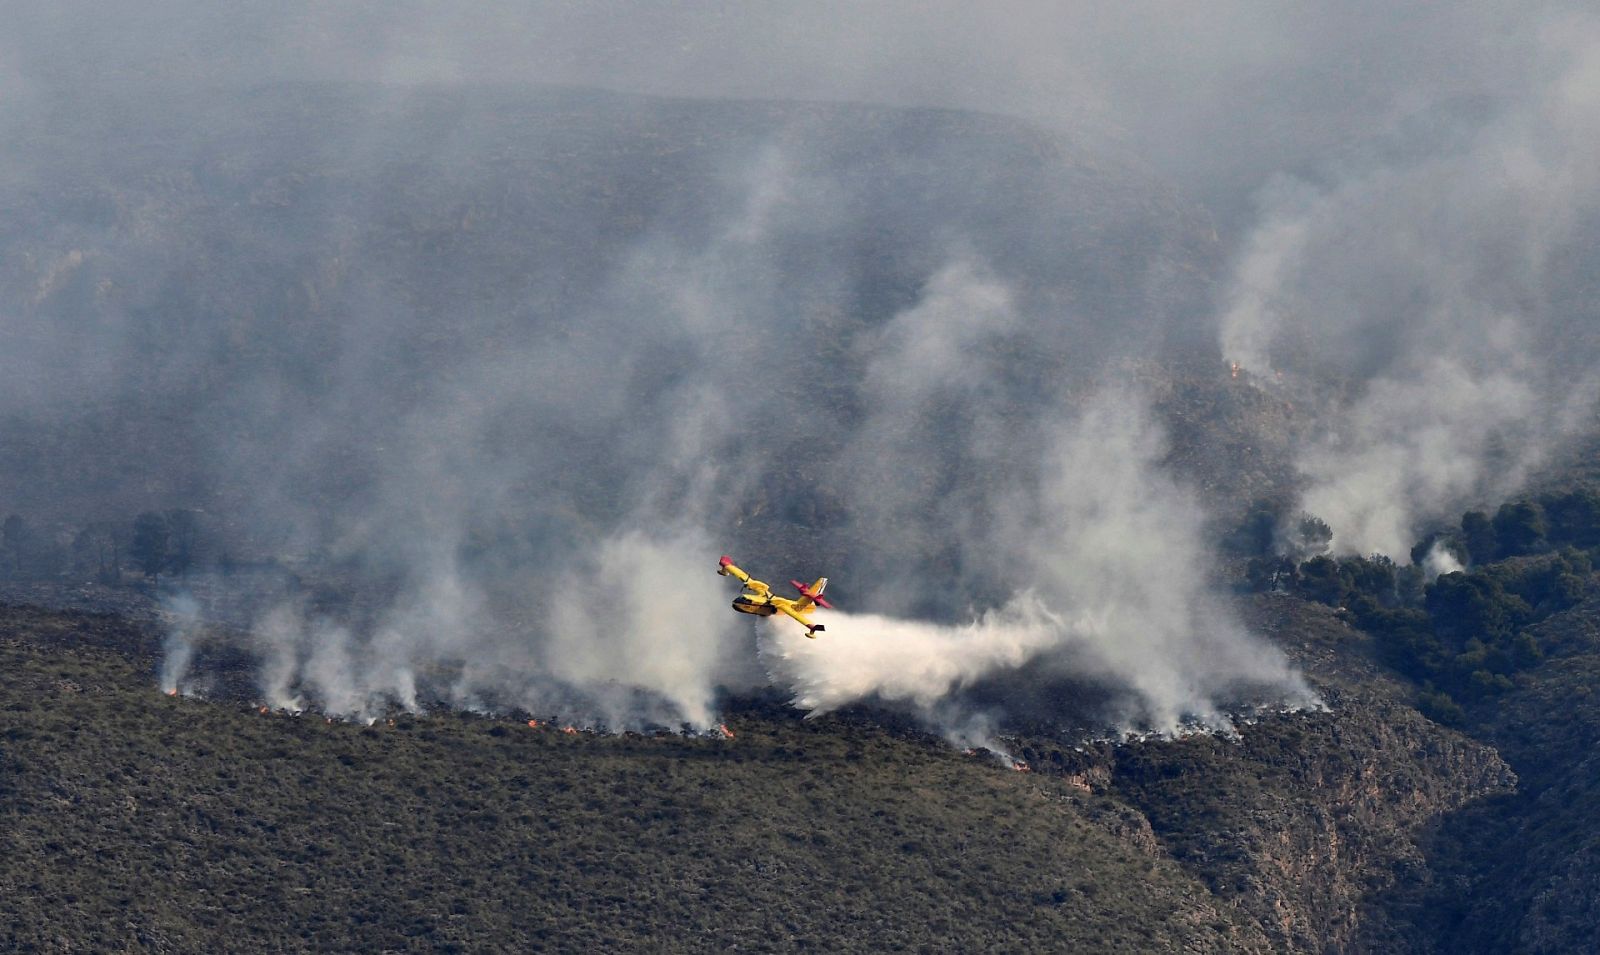 Sigue activo el incendio de Berja (Almería) que abarca un perímetro de 400 hectáreas